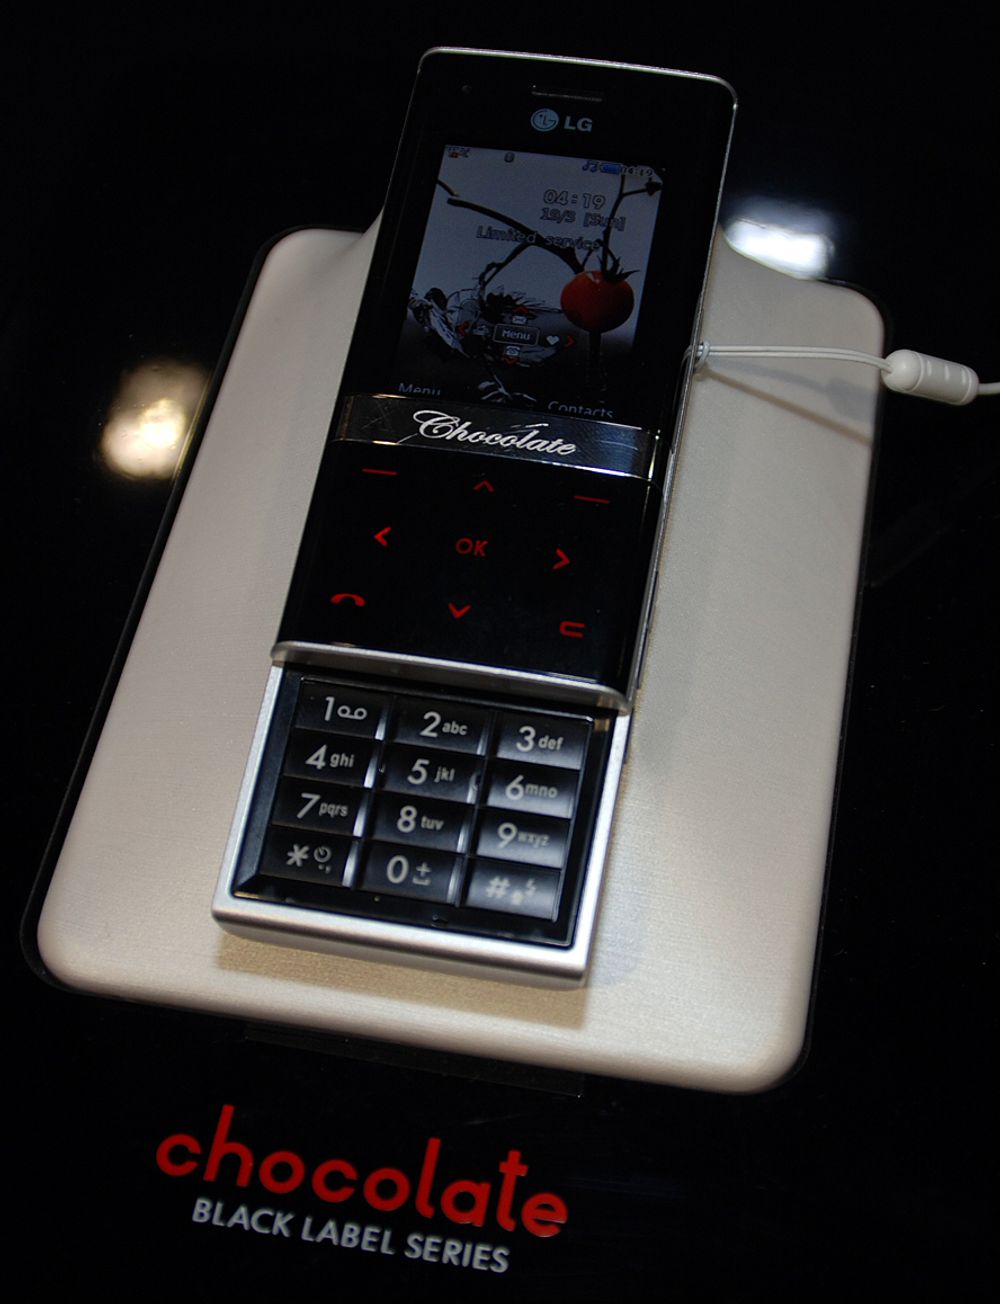 Chocolate var forgjengeren til Shine. Denne Chocolate-telefonen er modell KG800.